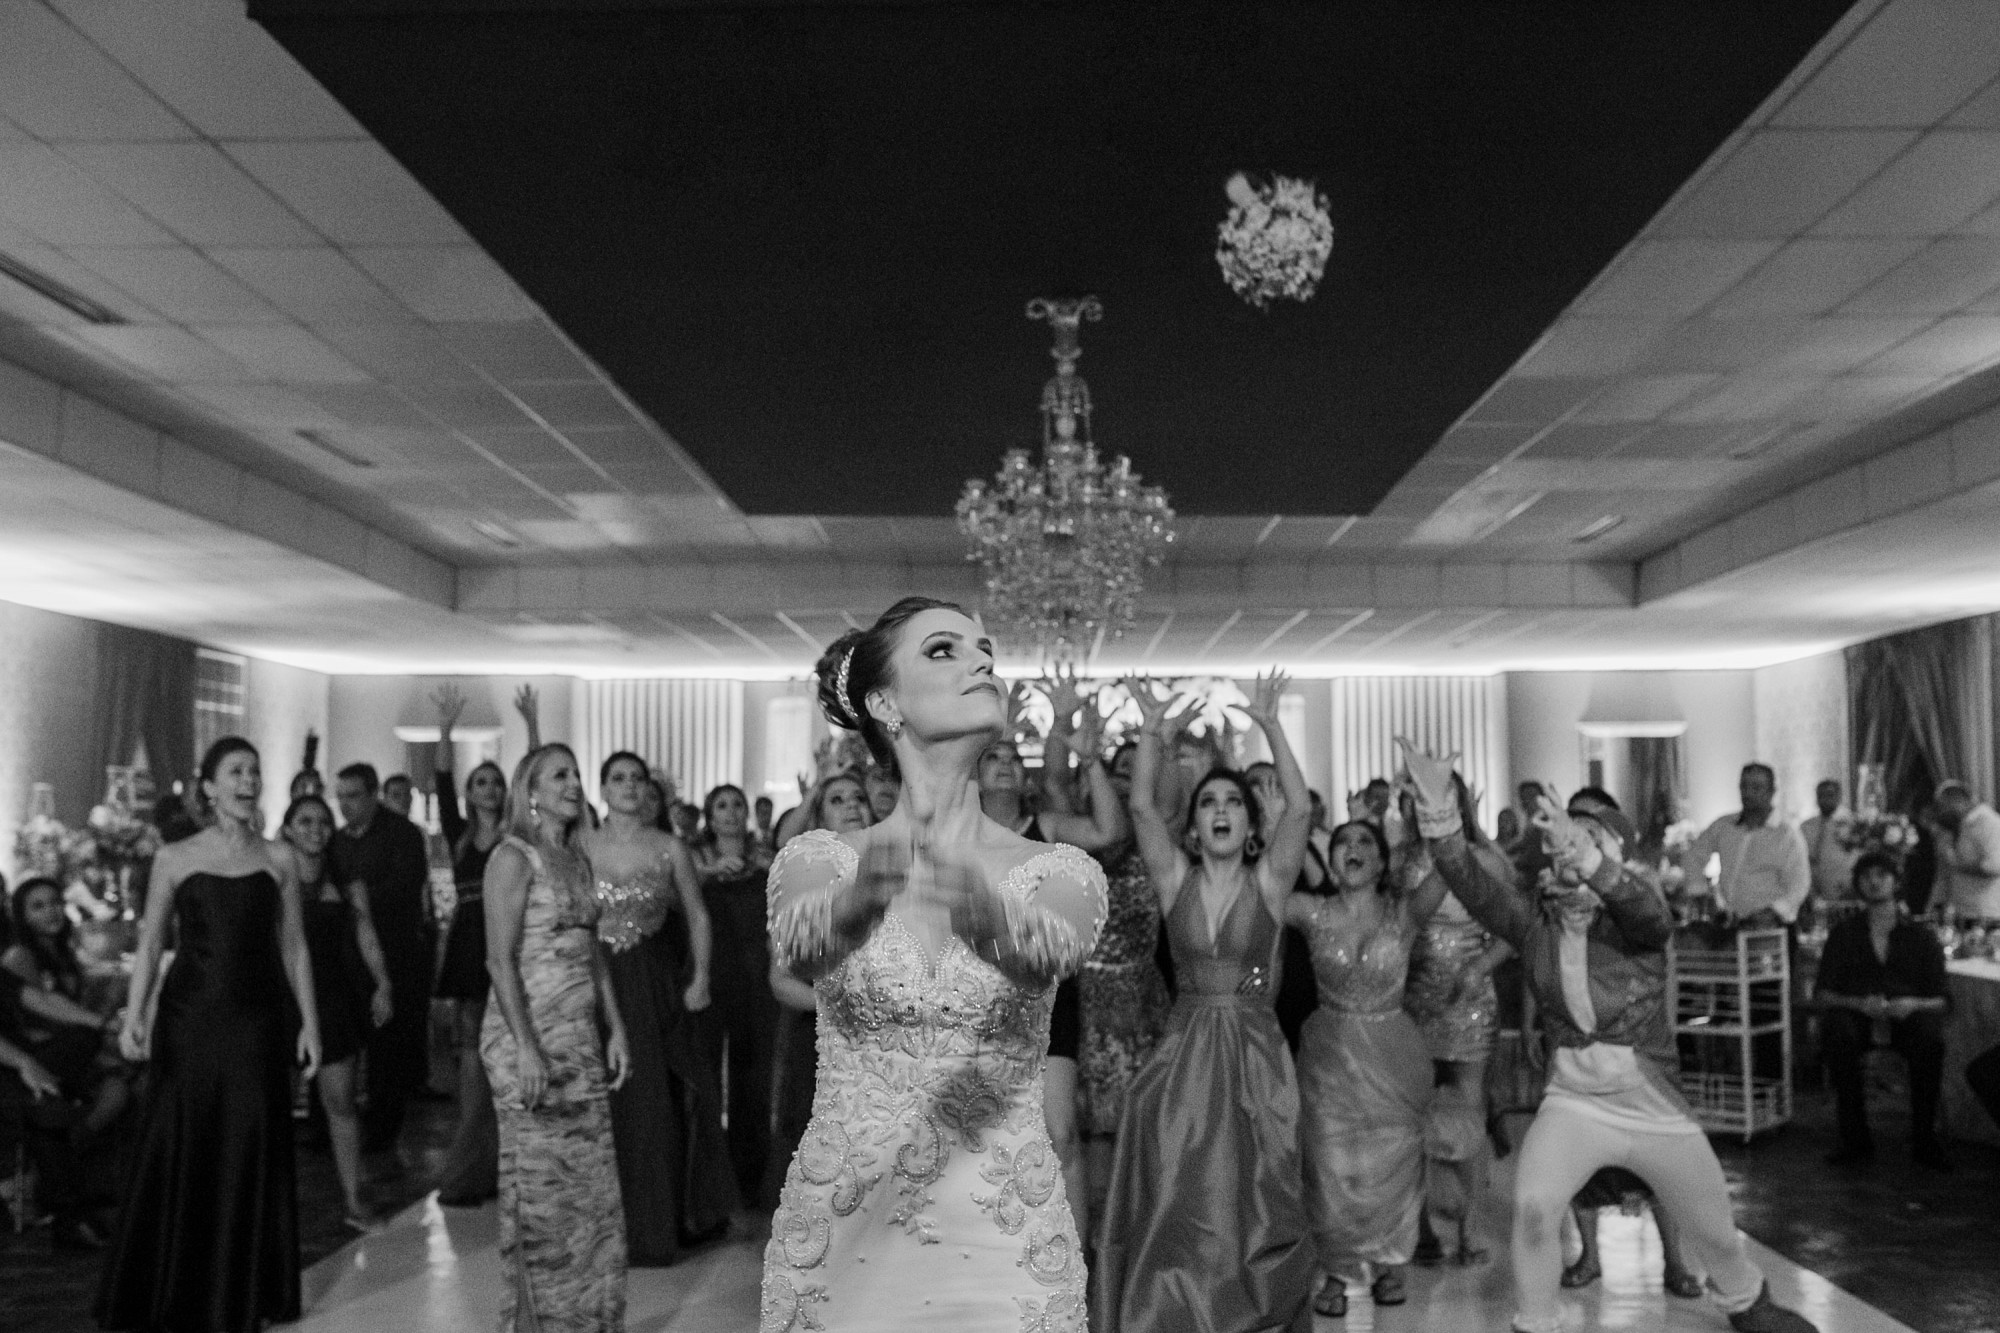 Casamento Anderson e Juliana Fioreli em Iporã Paraná - por Lorran Souza e Léia Sotile - Fotografos de casamentos - JA-4352-Editar